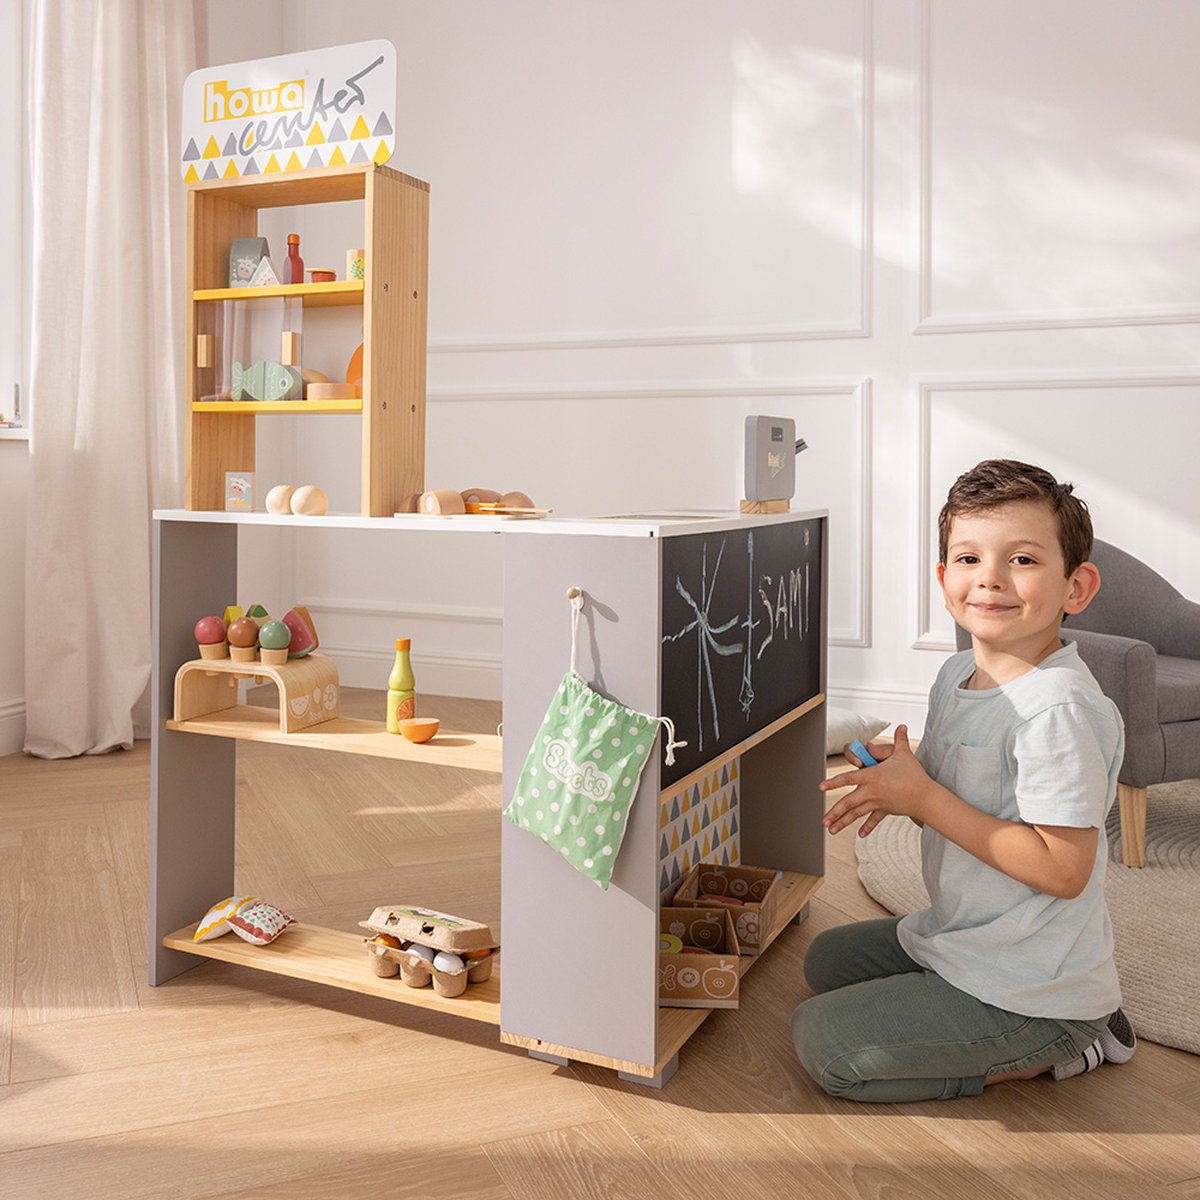 Houten speelgoedwinkeltjes: voor de duurzame kruidenier van de toekomst